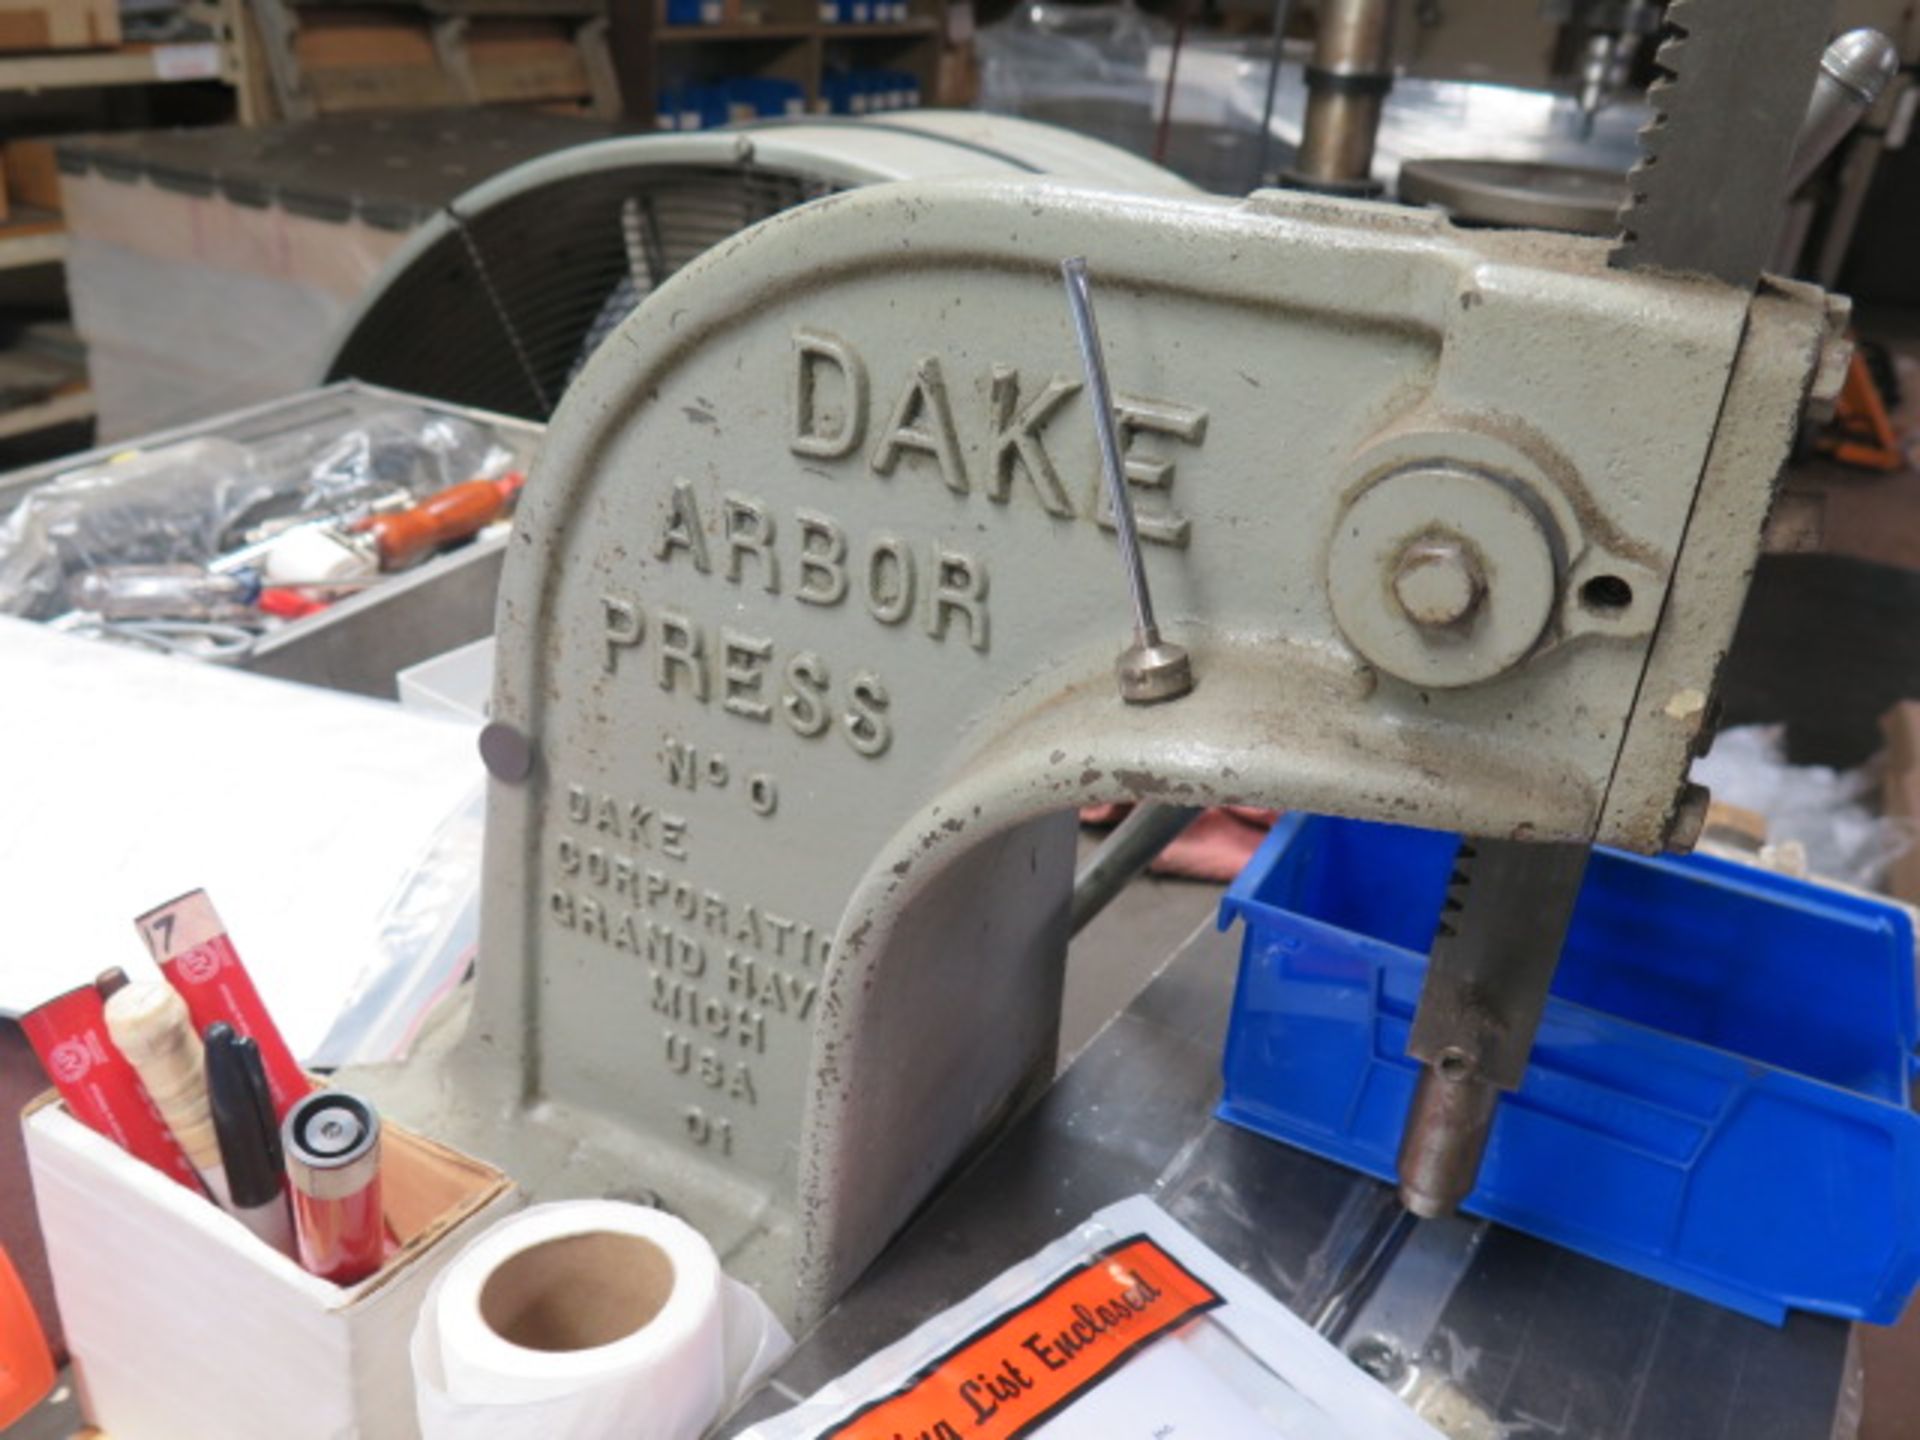 Dake Arbor Press - Image 2 of 2